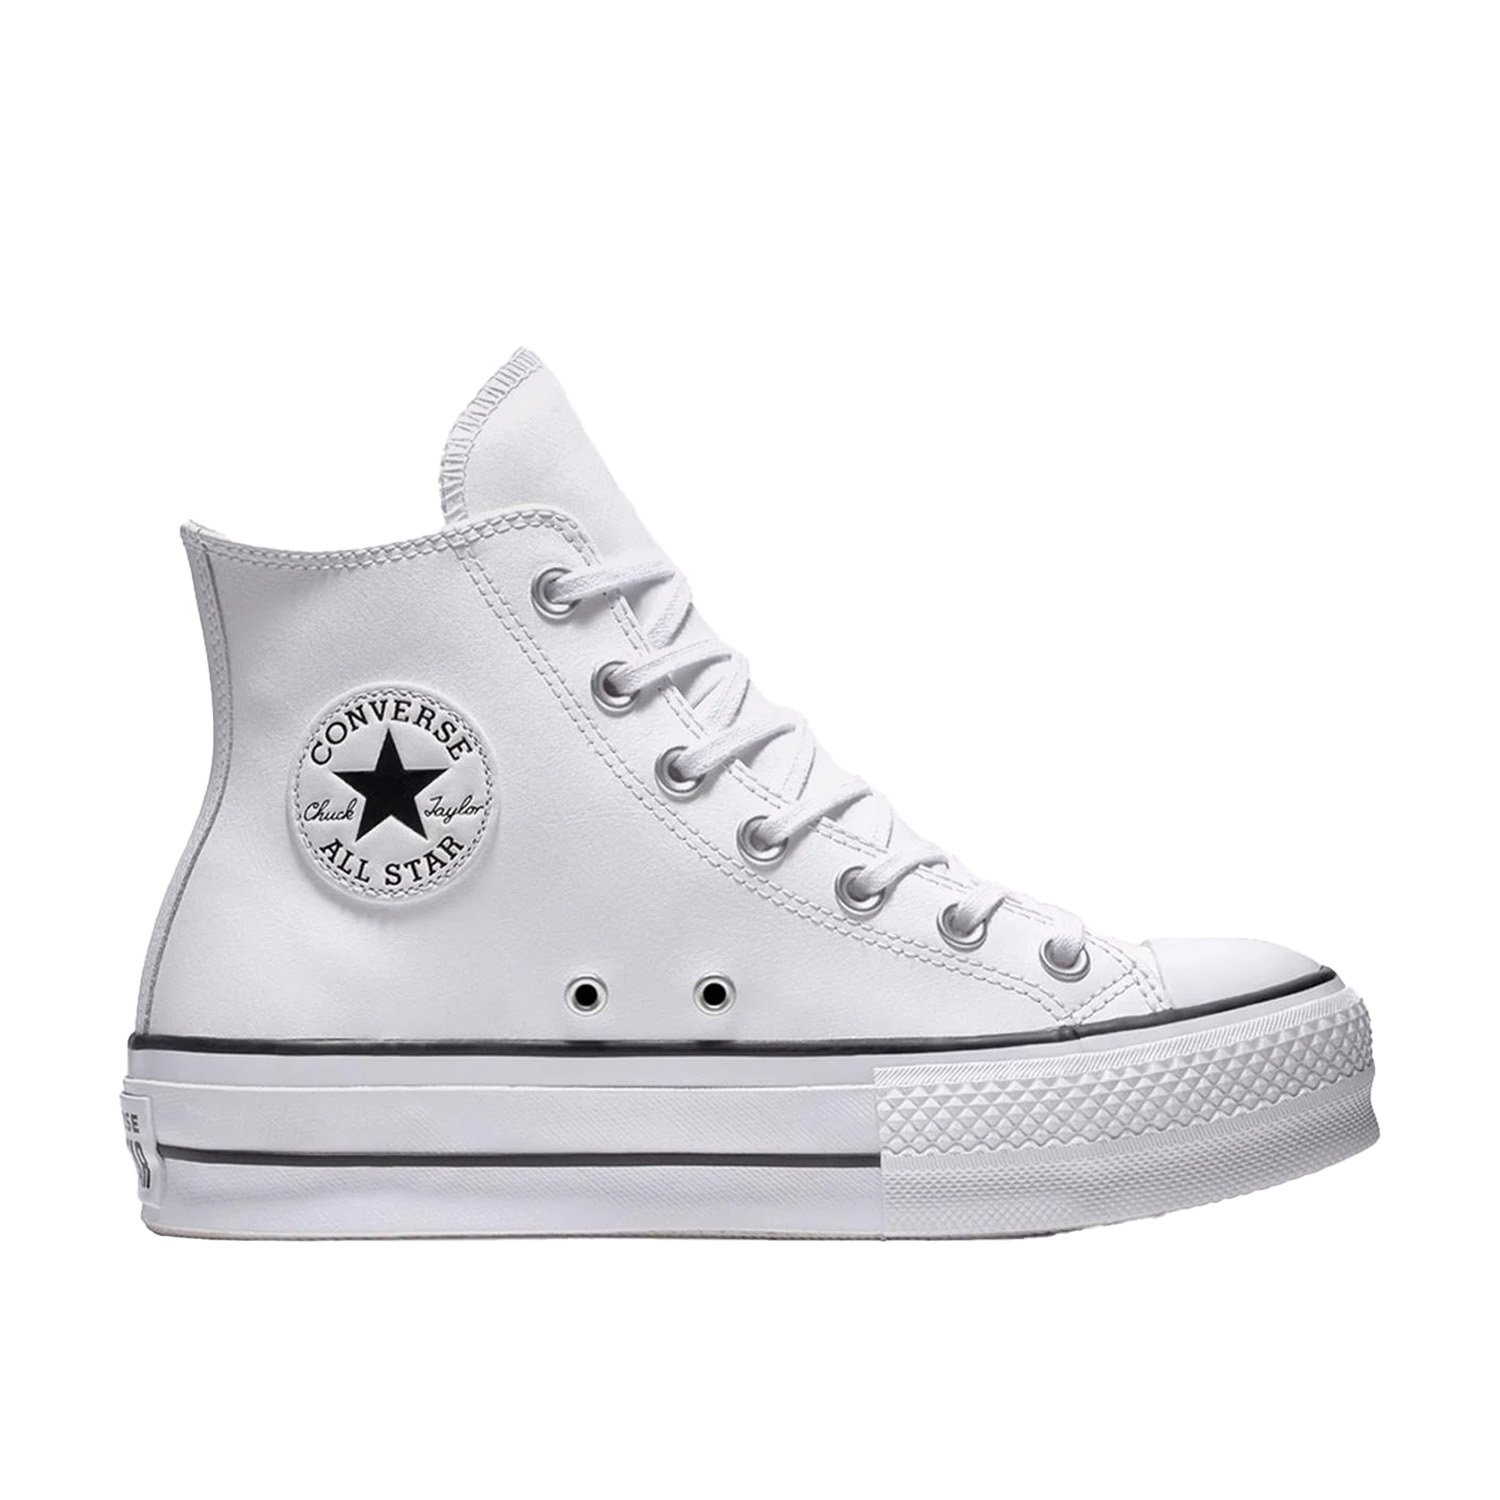 Converse Chuck Taylor All Star Leather Platform Kadın Ayakkabı - Beyaz - 1